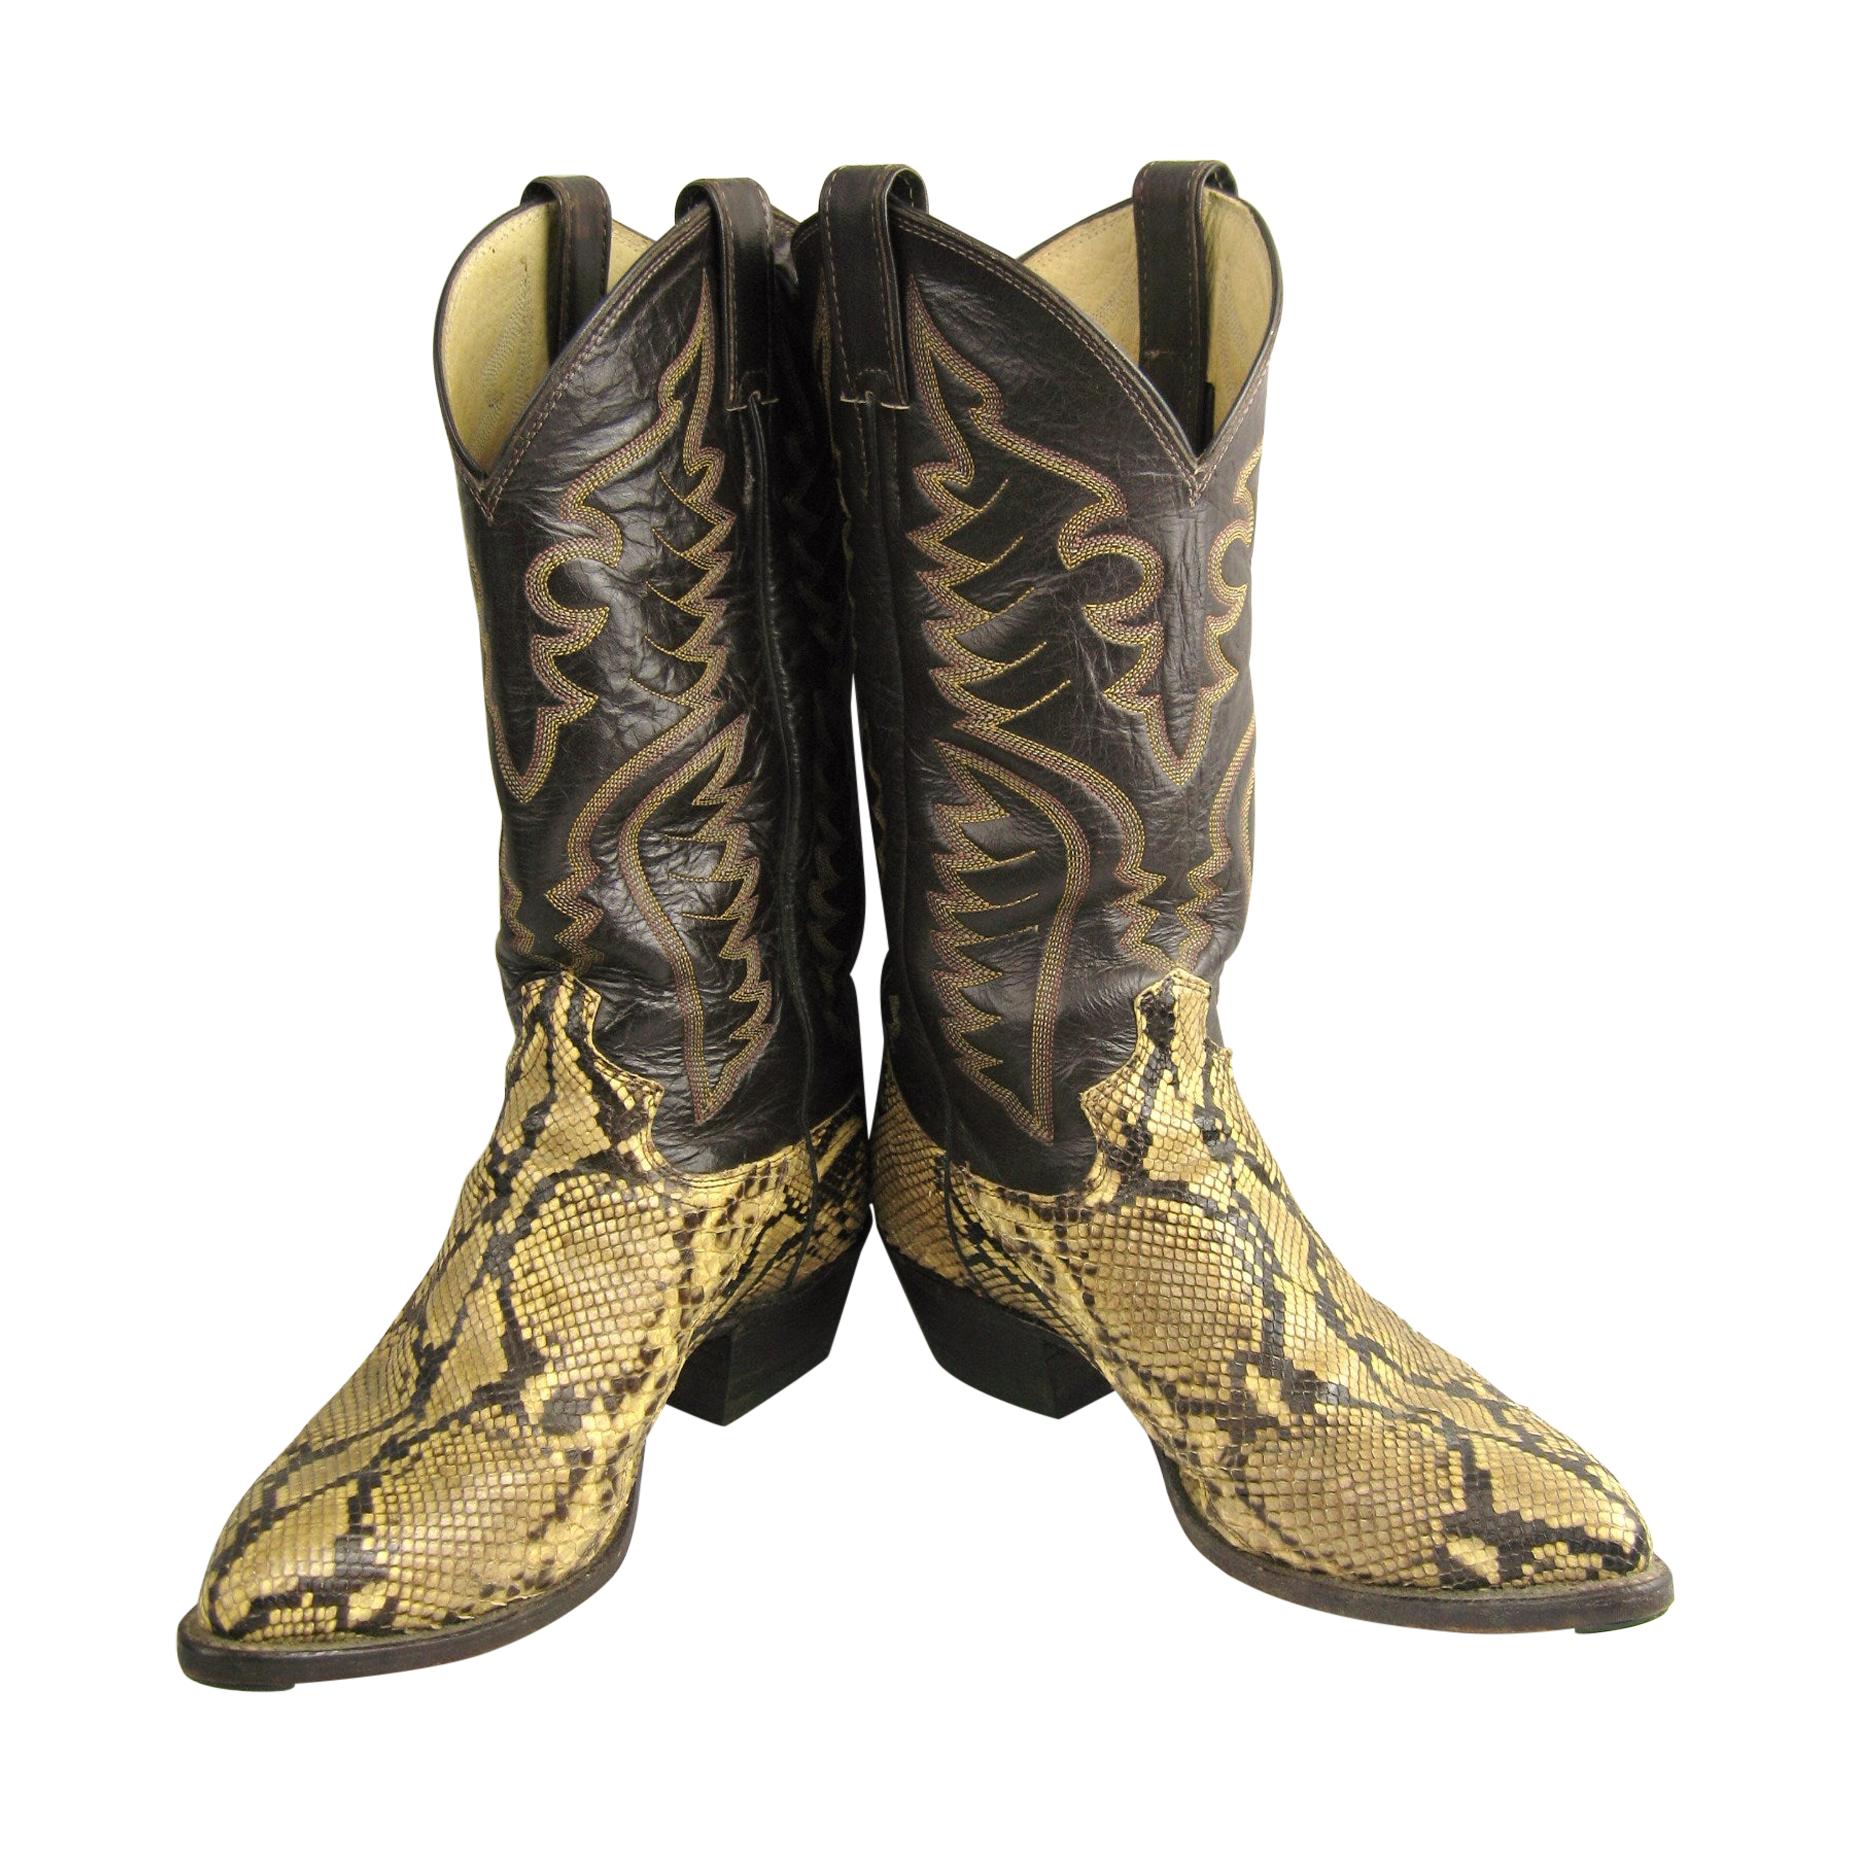 Schoenen Herenschoenen Laarzen Cowboy & Westernlaarzen Maat 7 1/2D Heren Vintage Justin Taupe Brown Snakeskin Cowboy Boots 